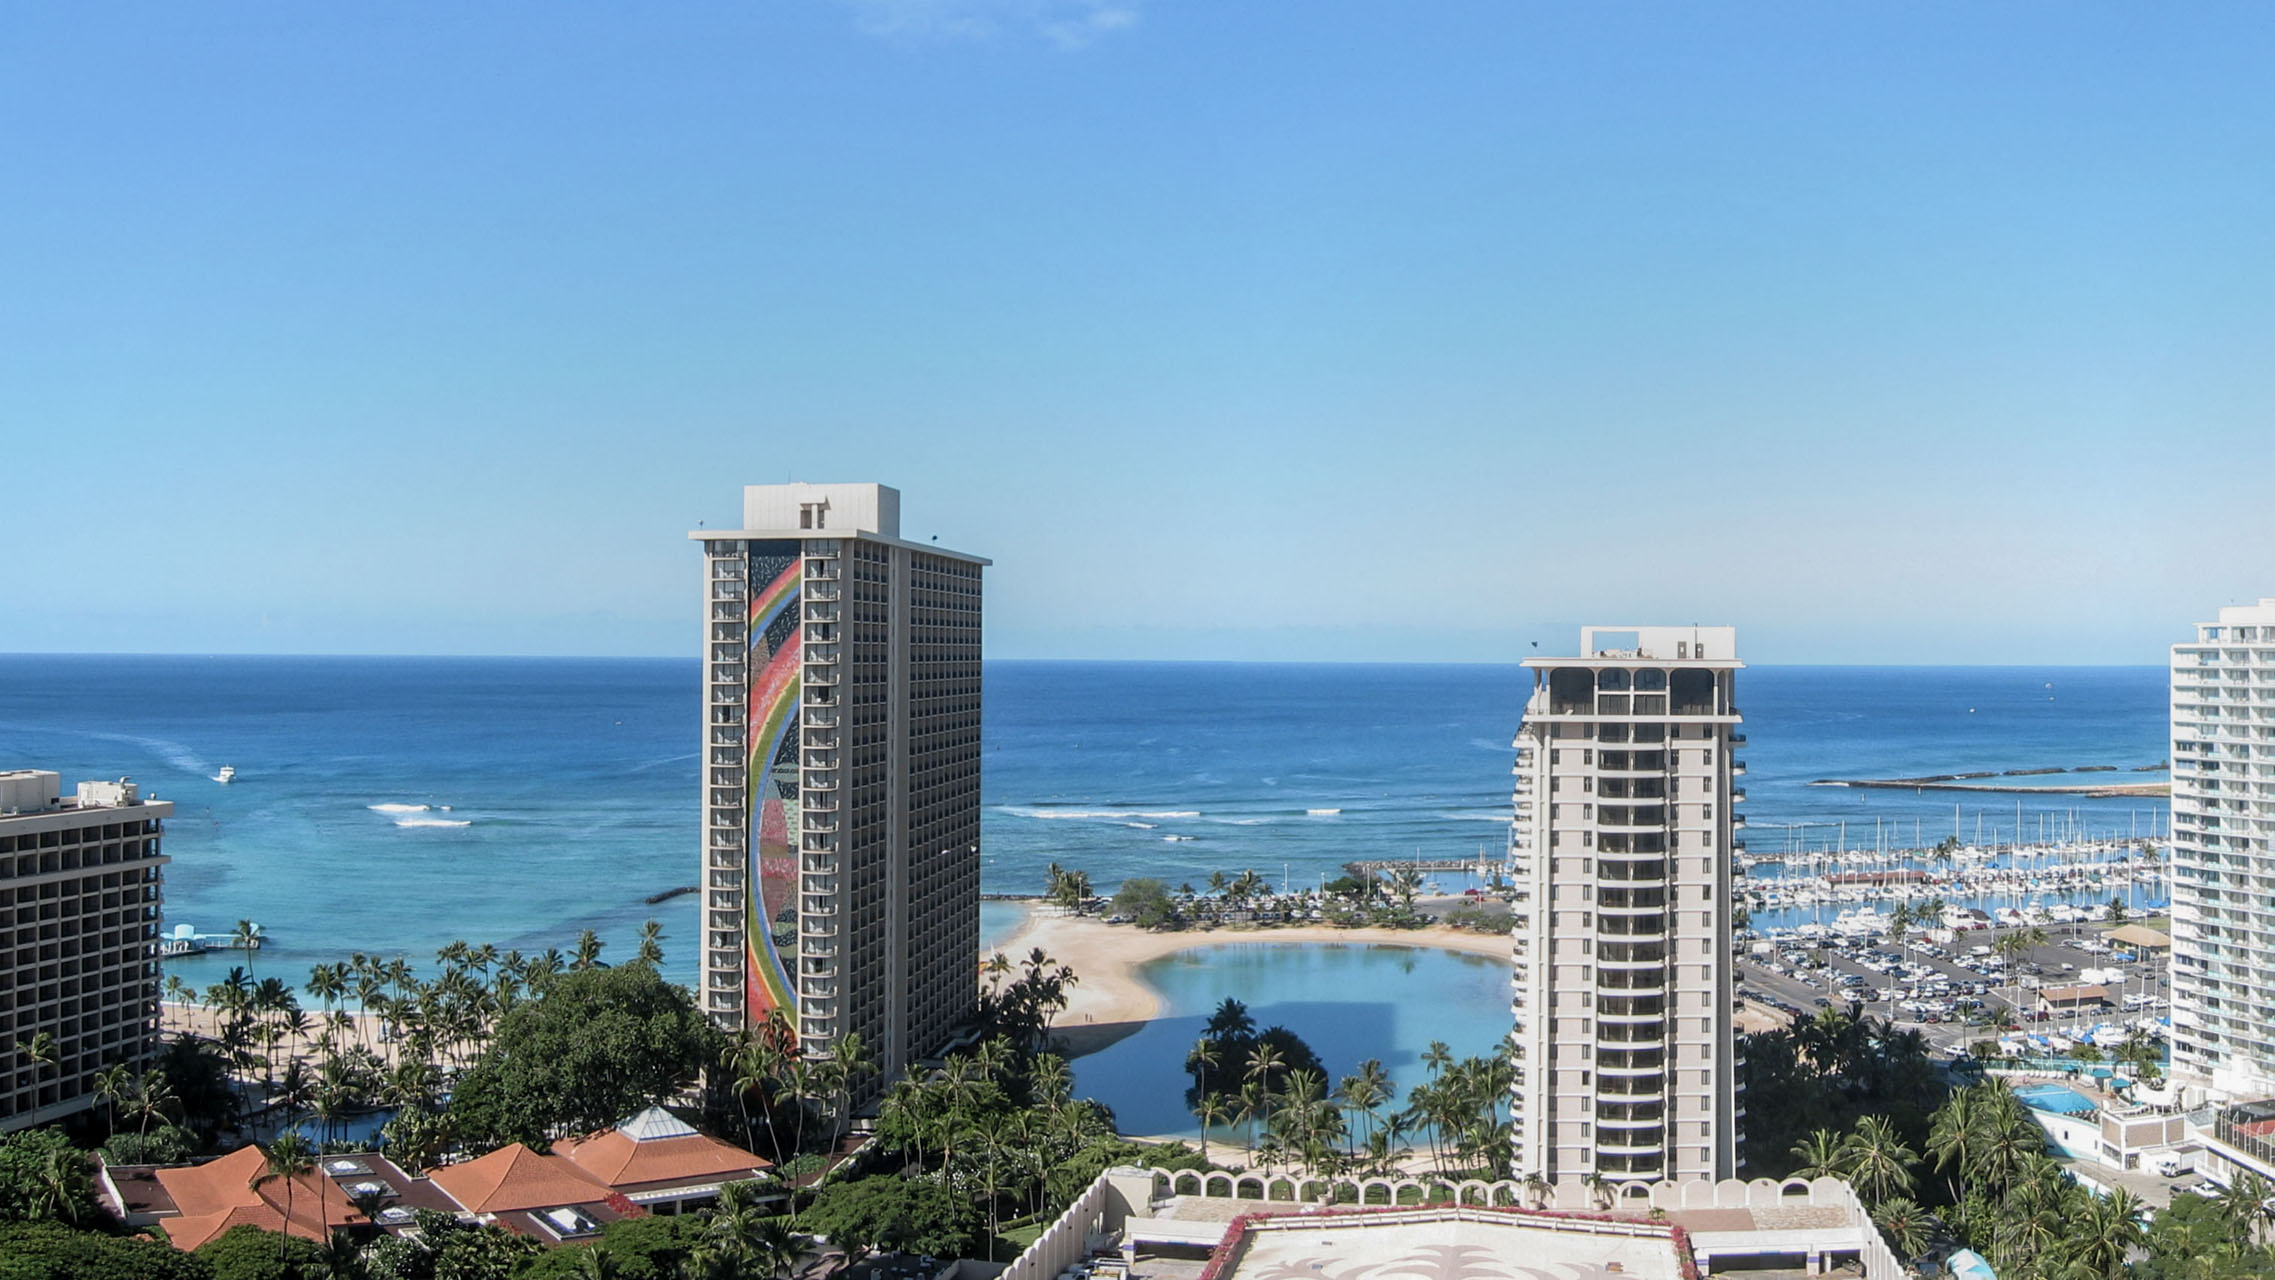 Oahu-Hilton-Hawaiian-Village-Waikiki-Beach-Resort